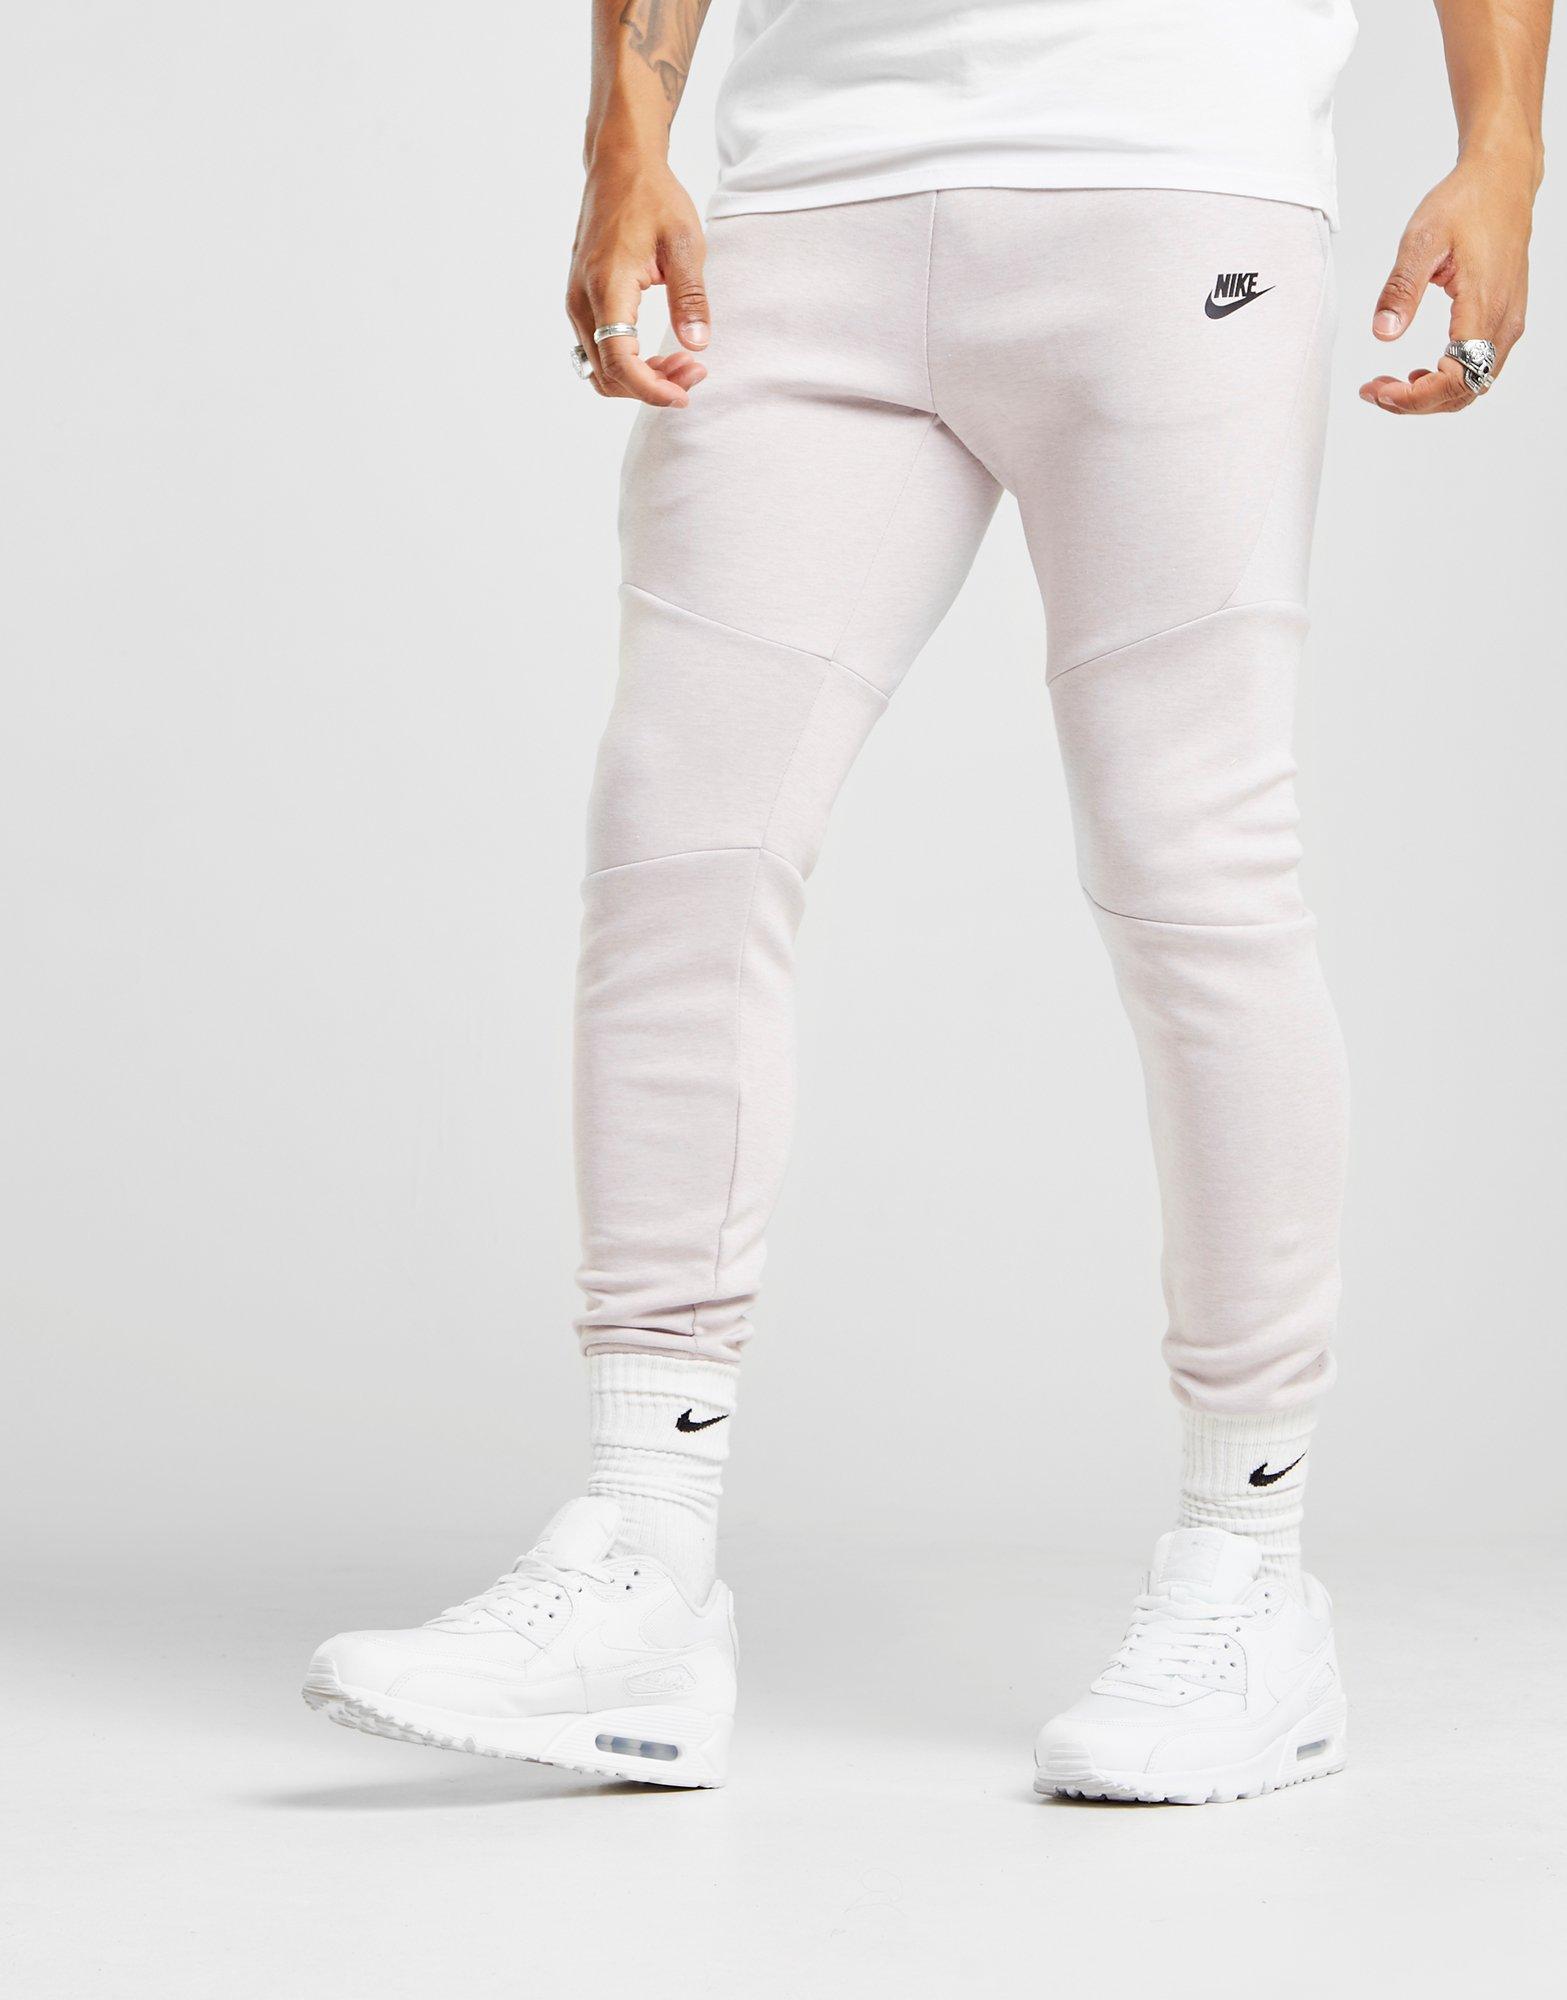 white nike tech pants